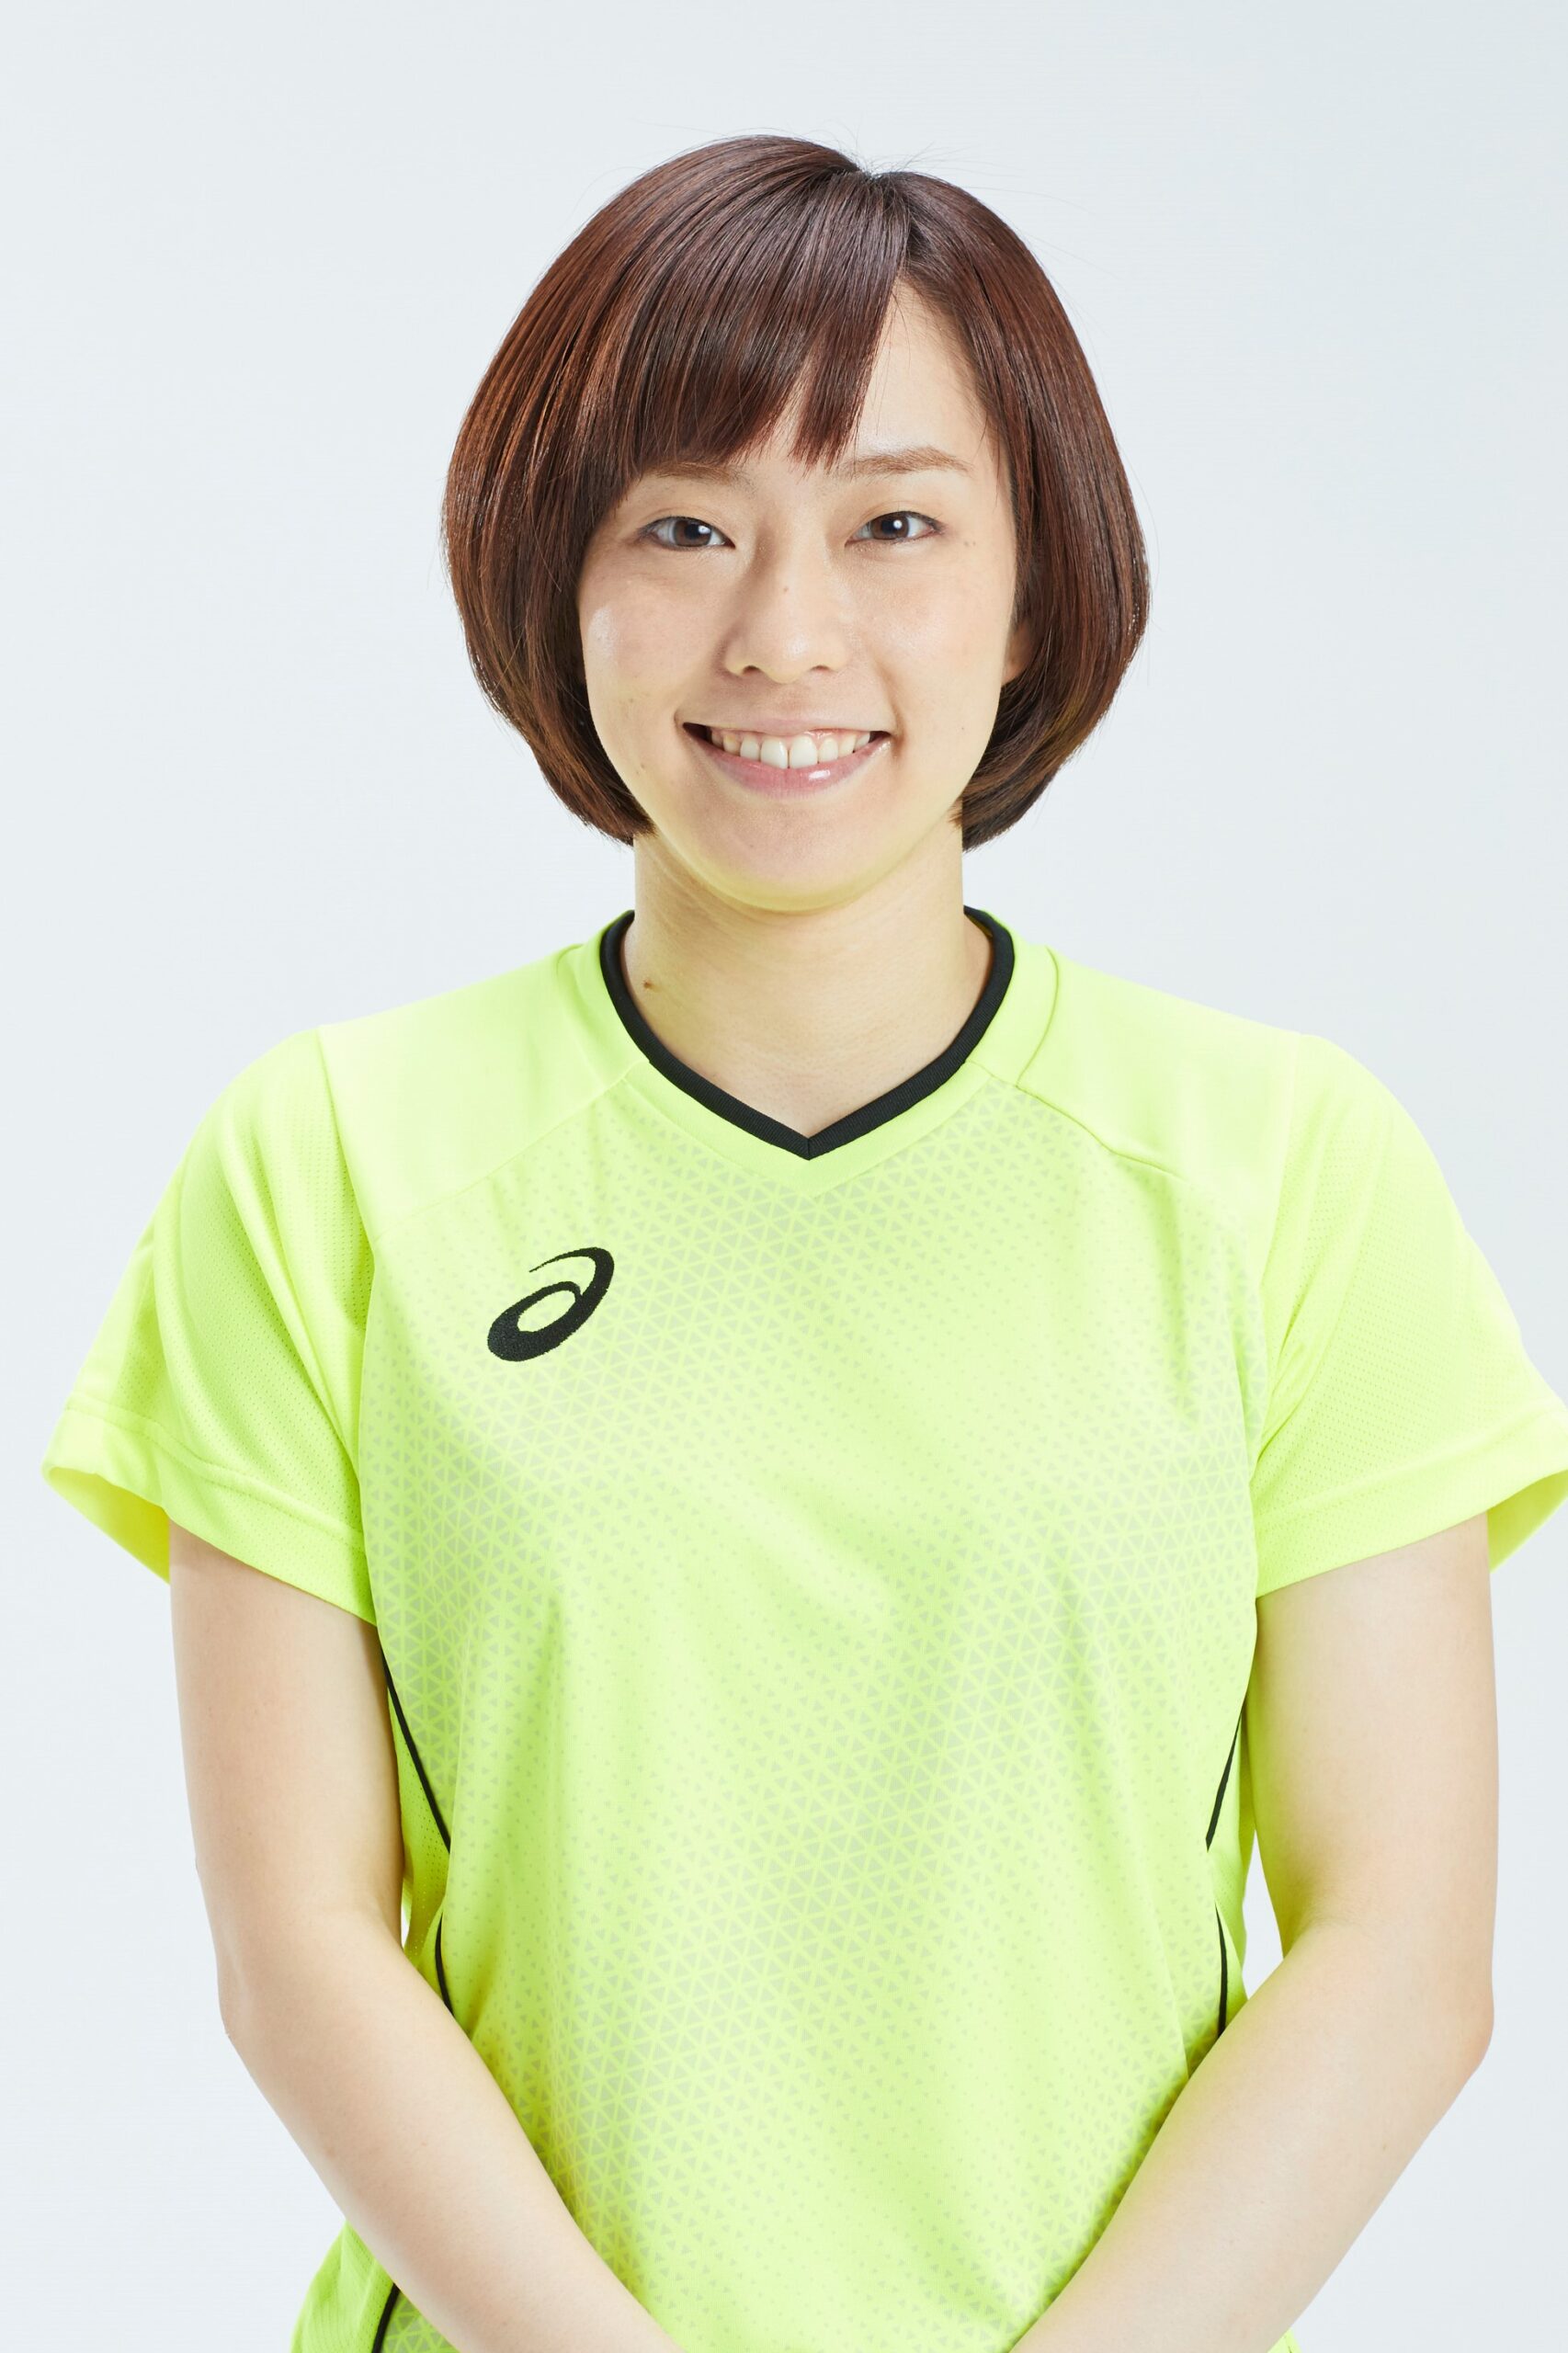 石川佳純元卓球選手1993年生まれ